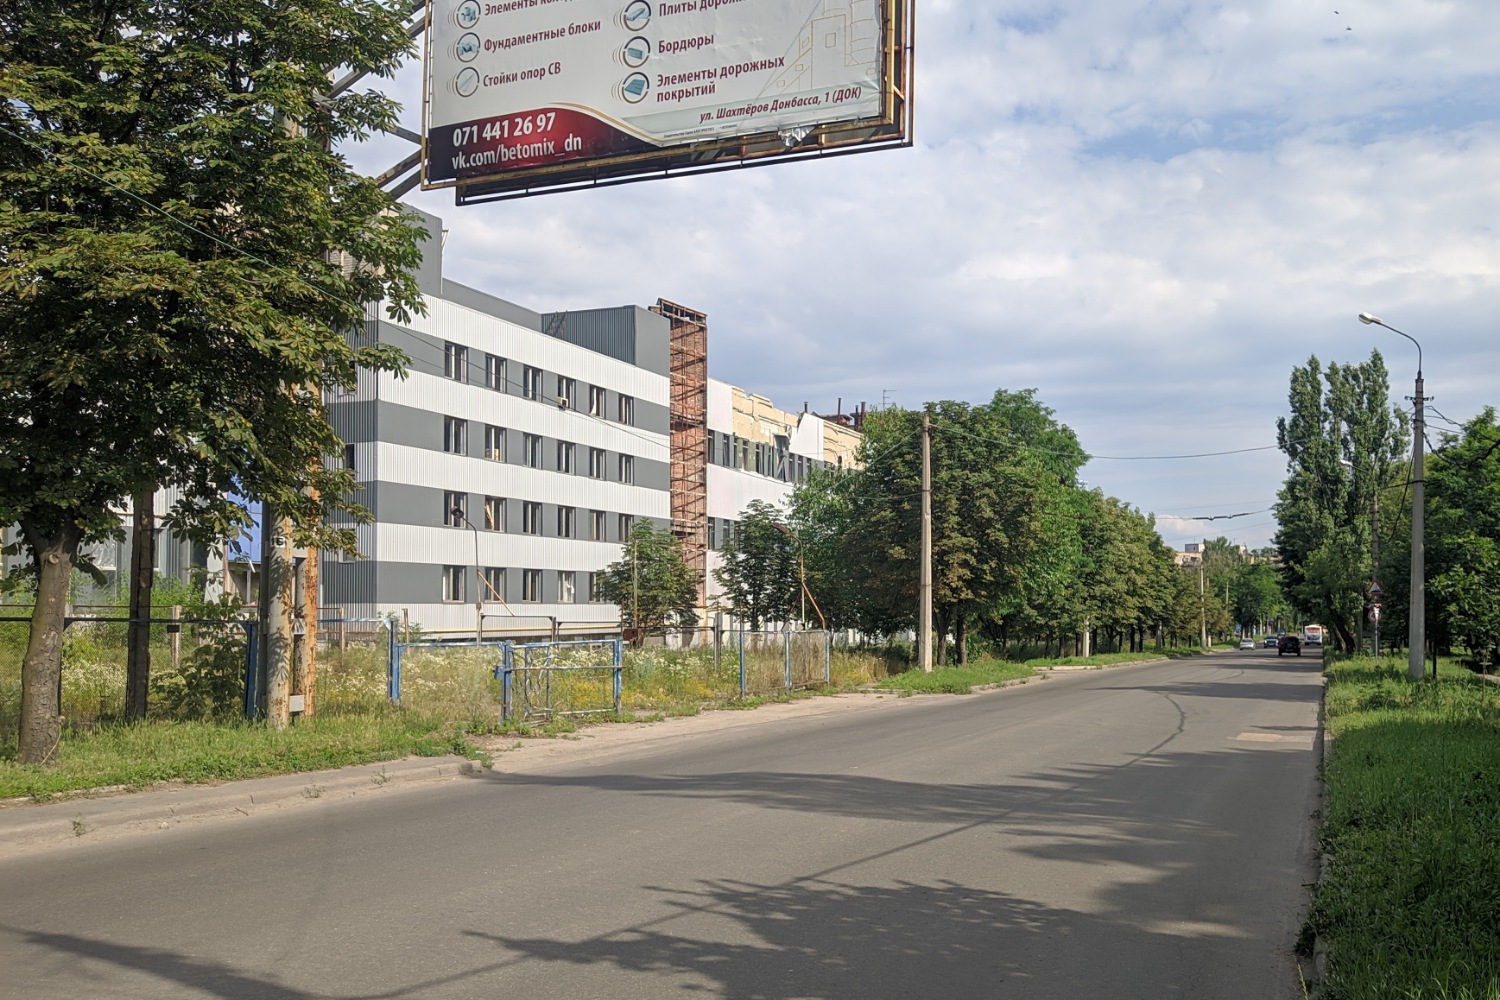 Донецк — Повреждения от военных действий; Донецк — Разные троллейбусные фотографии